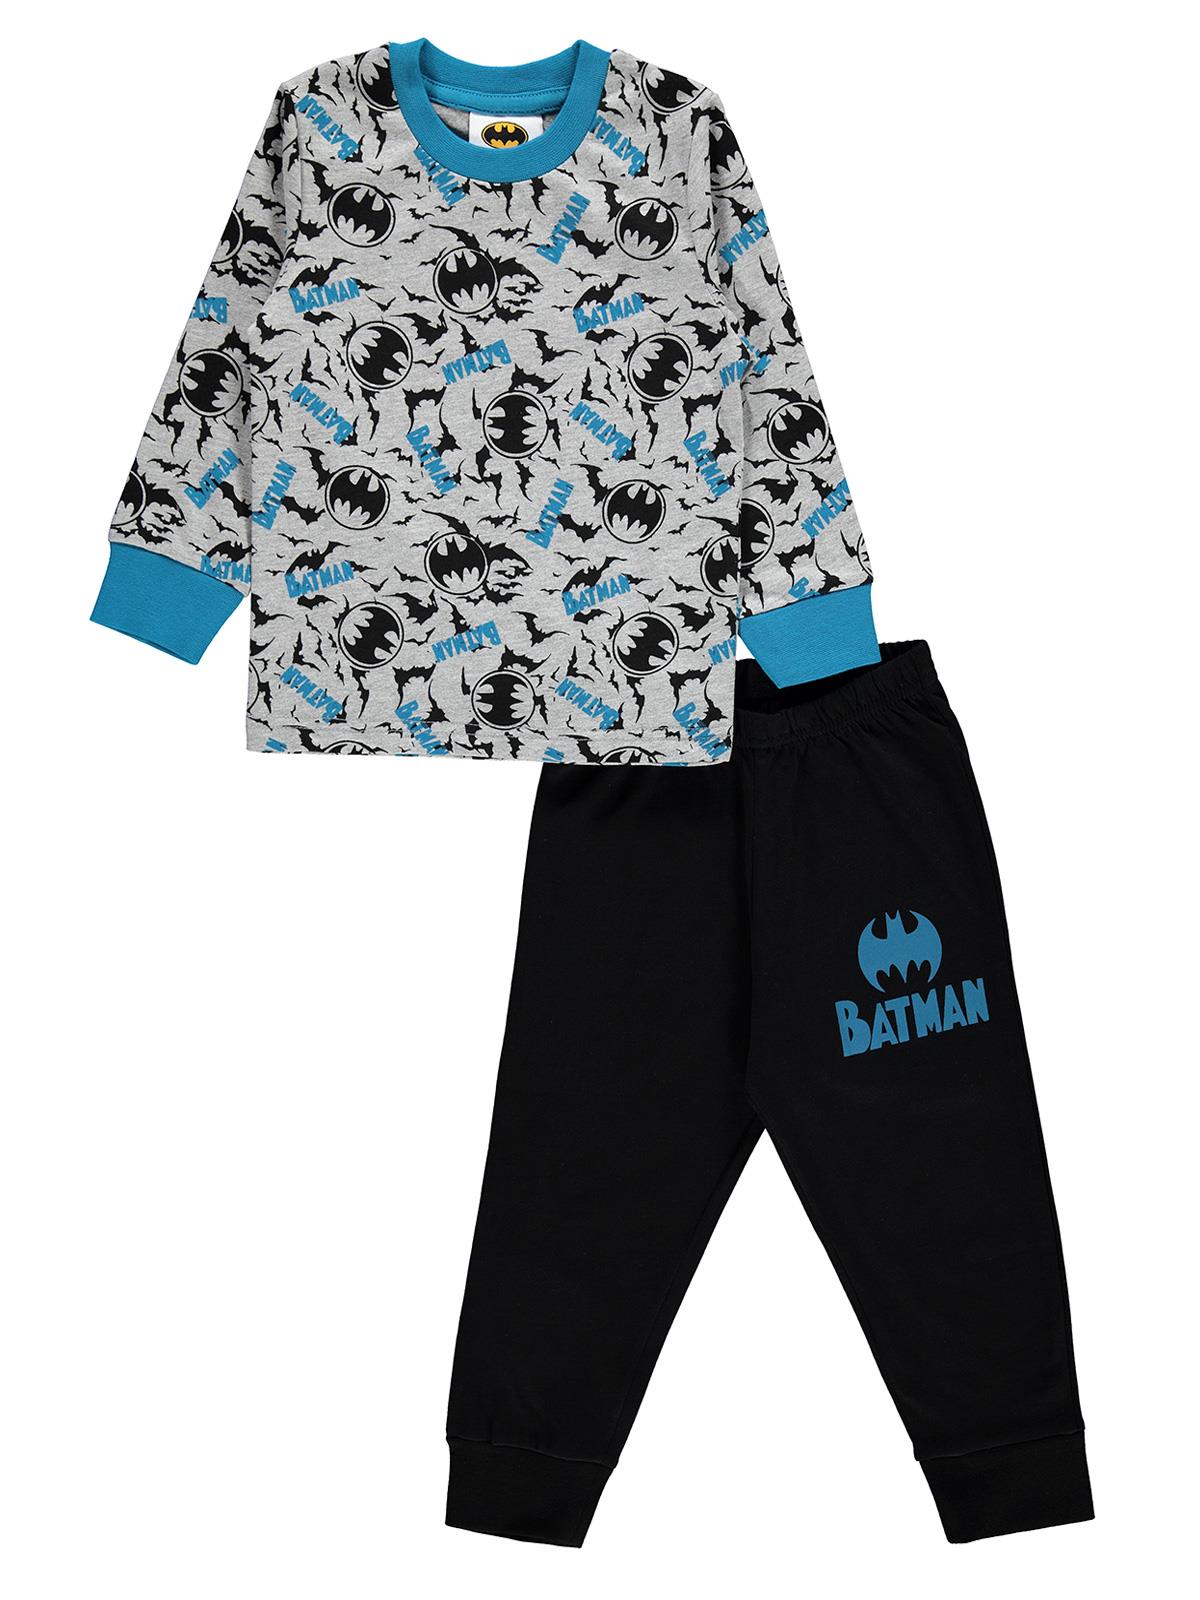 Batman Erkek Çocuk Pijama Takımı 2-5 Yaş Gri